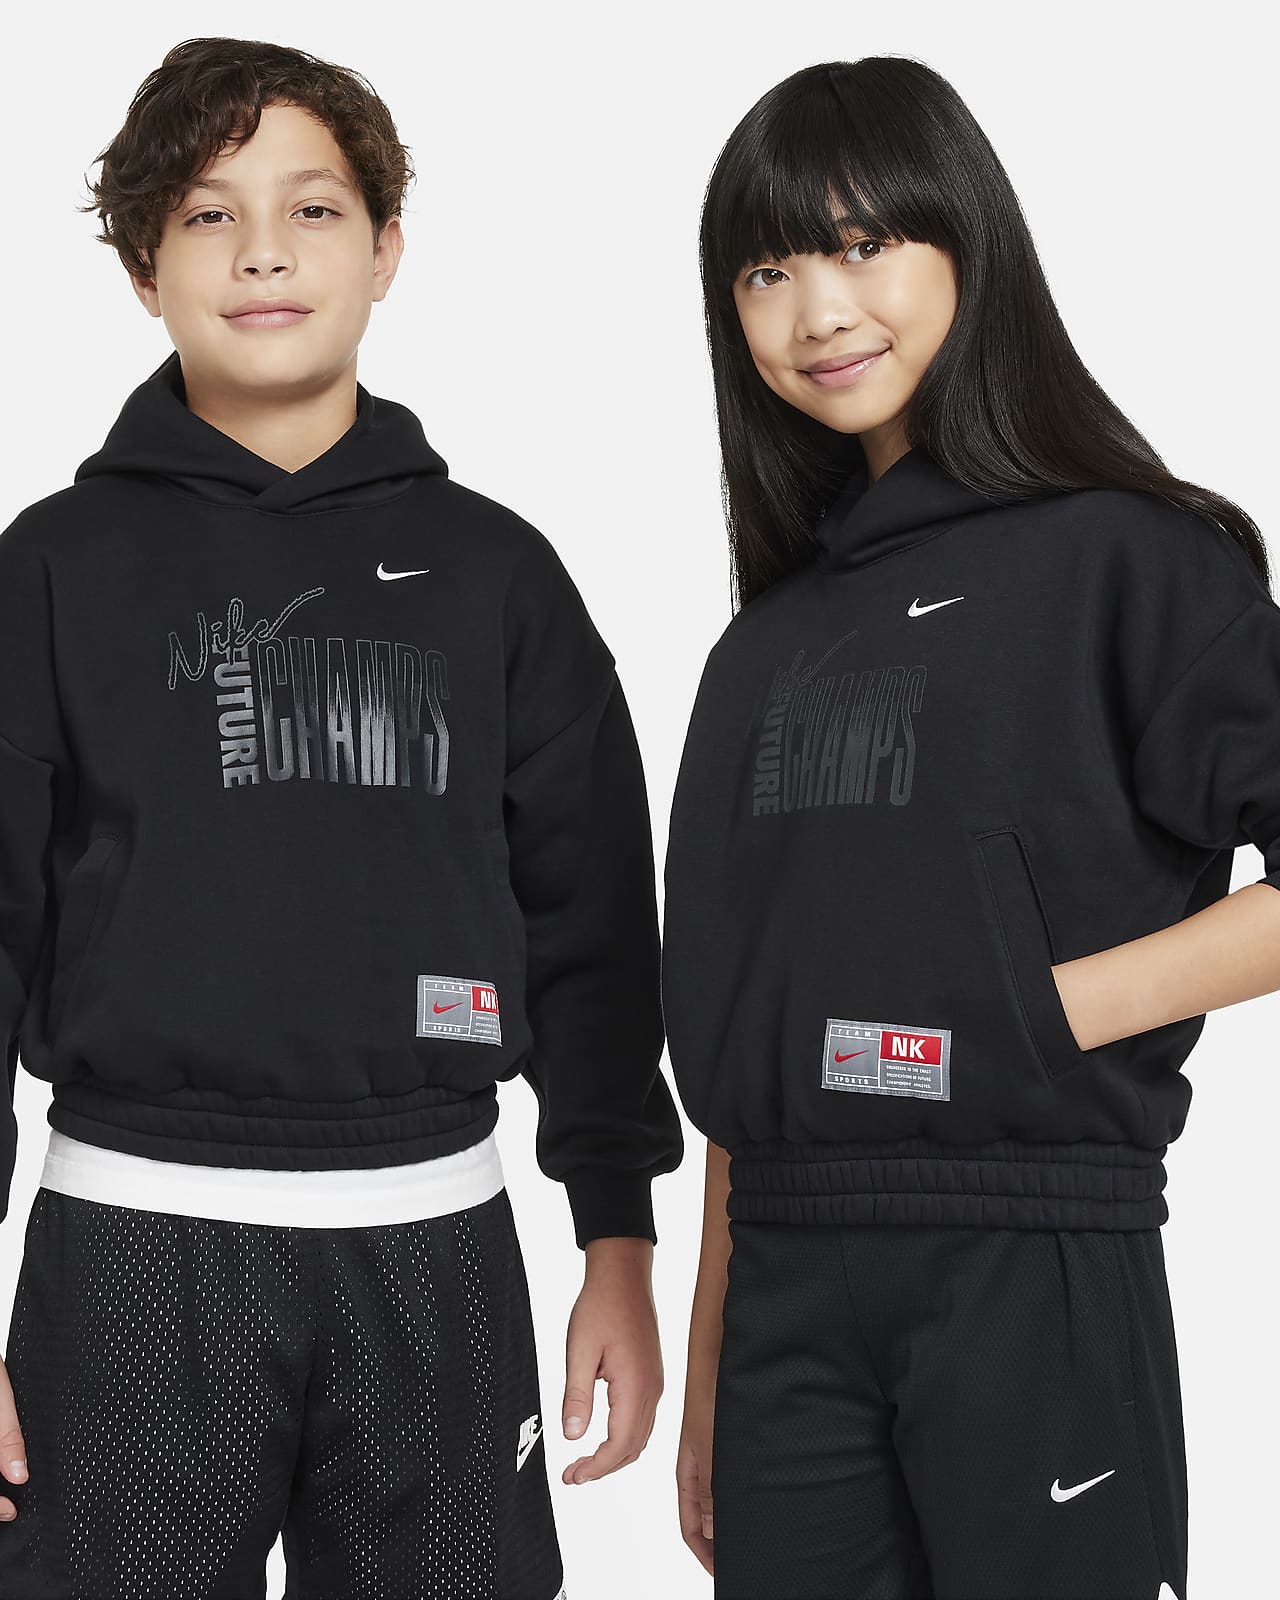 Flísová mikina Nike Culture of Basketball s kapucí pro větší děti